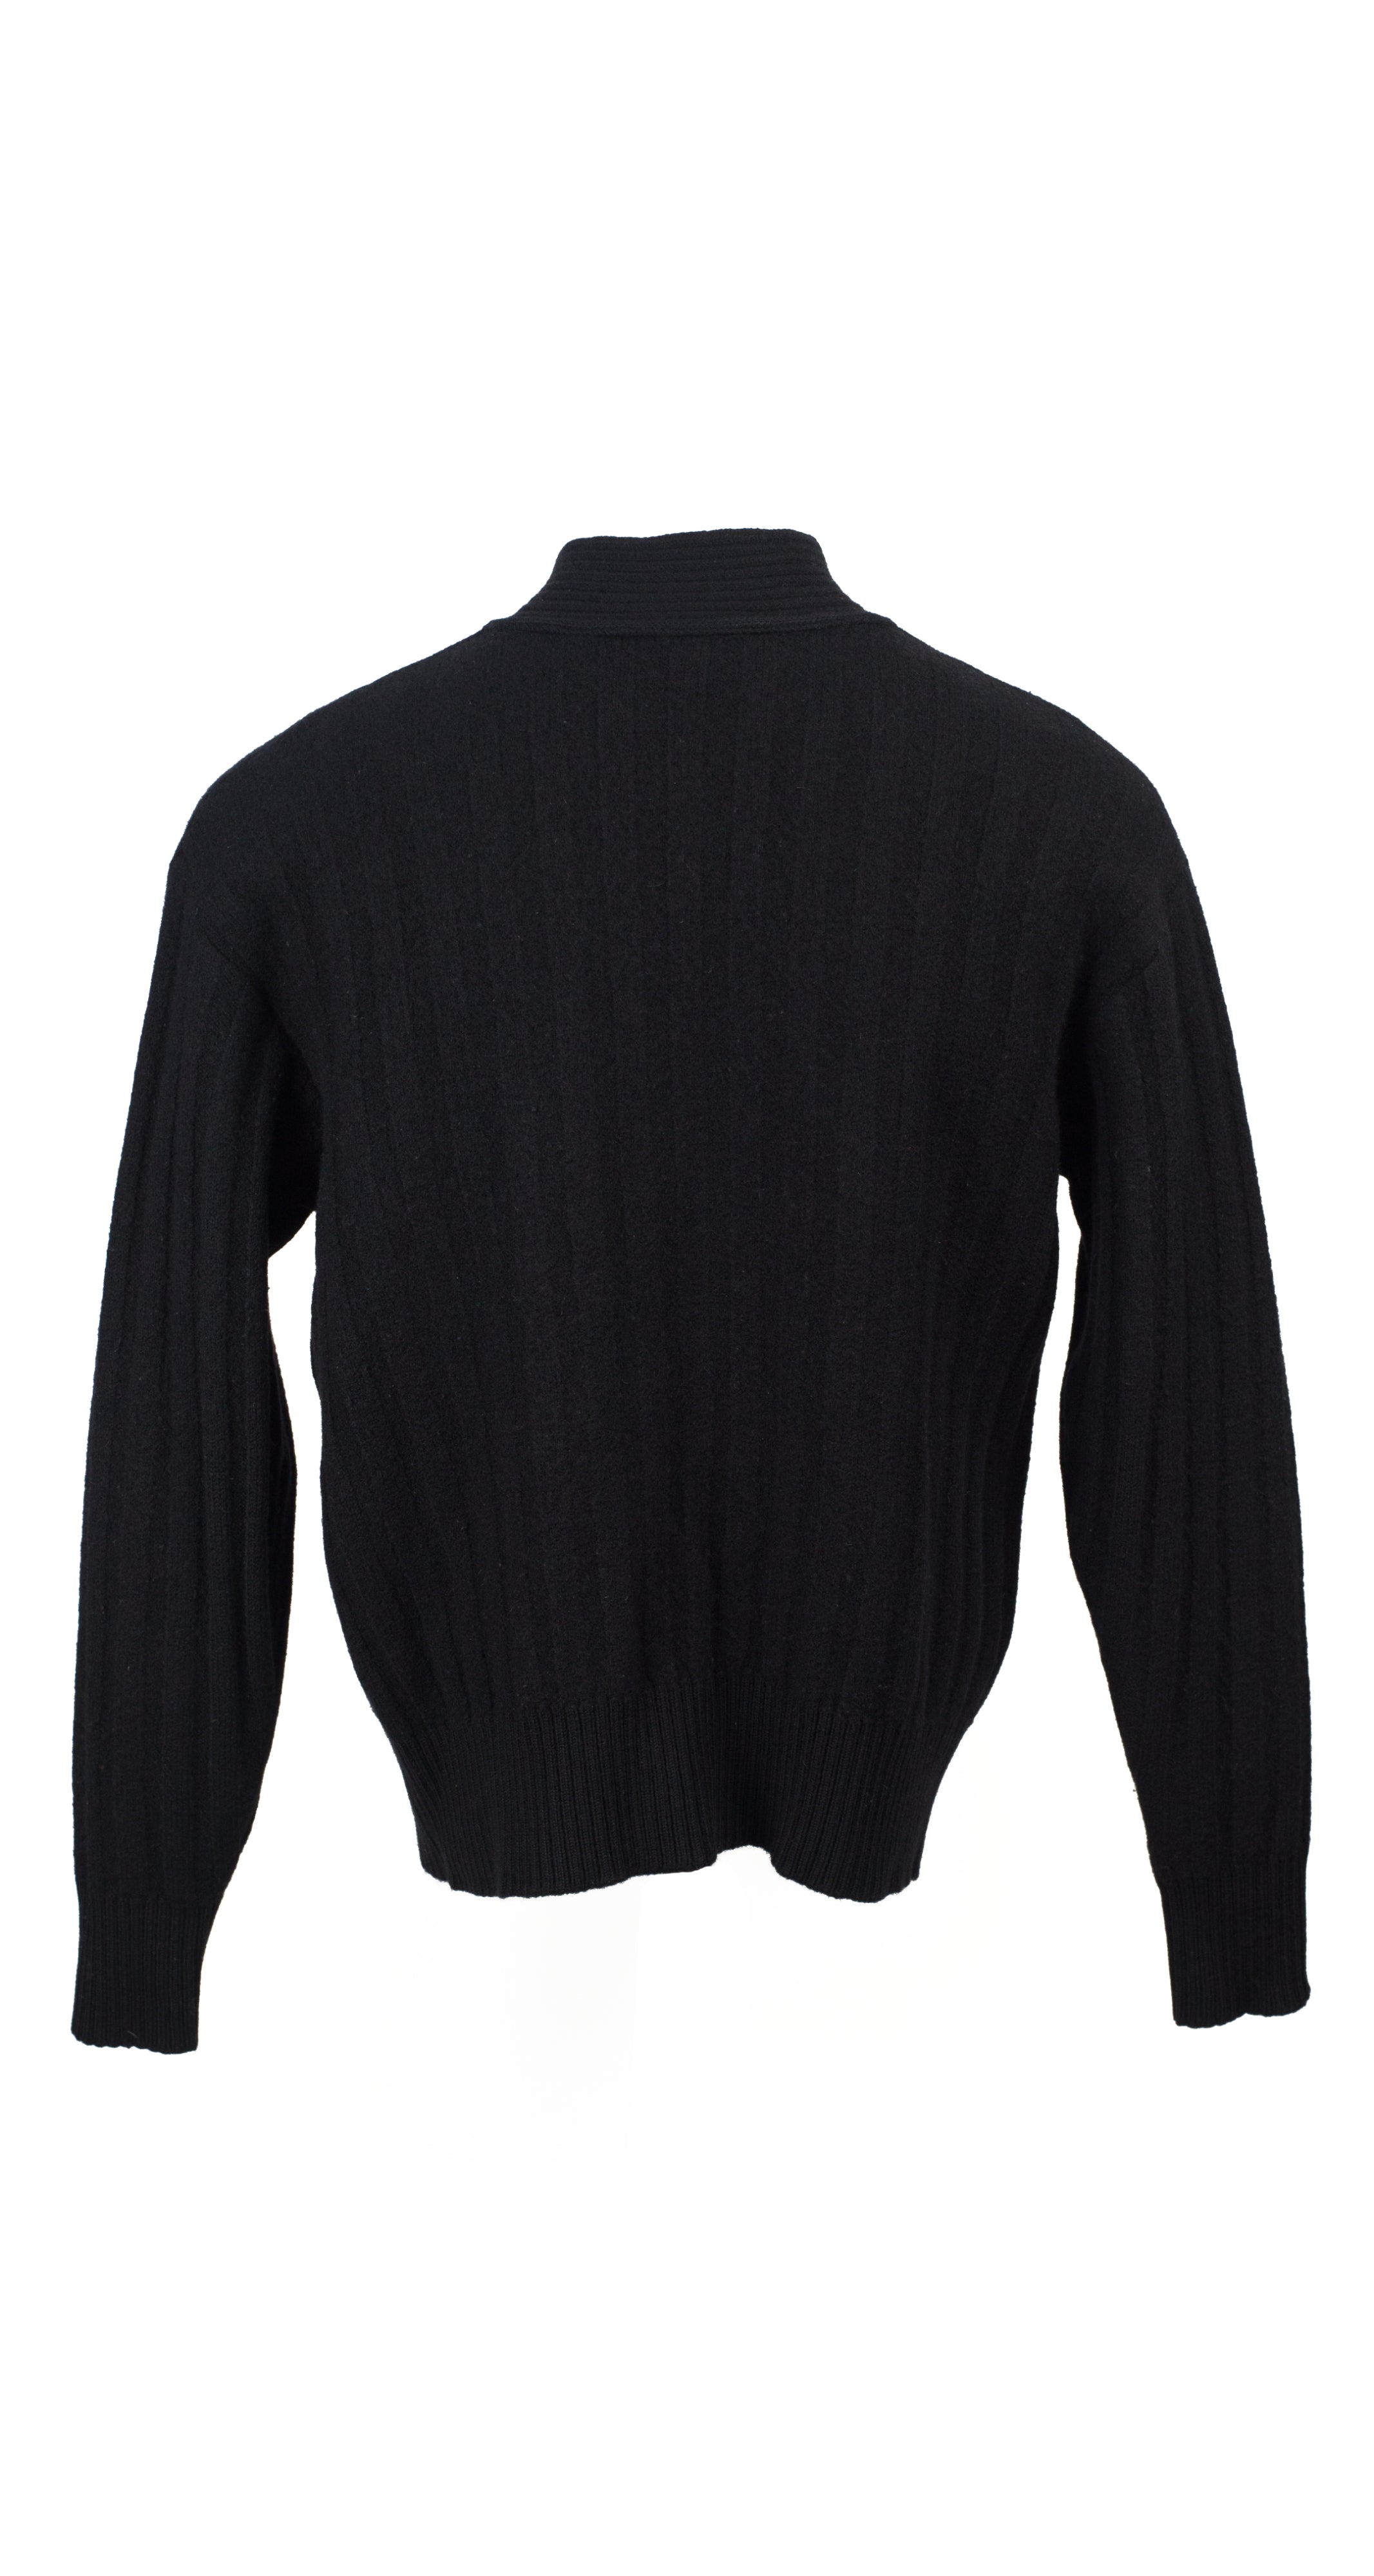 1980s Men's Embroidered Emblem Black Wool Turtleneck Sweater